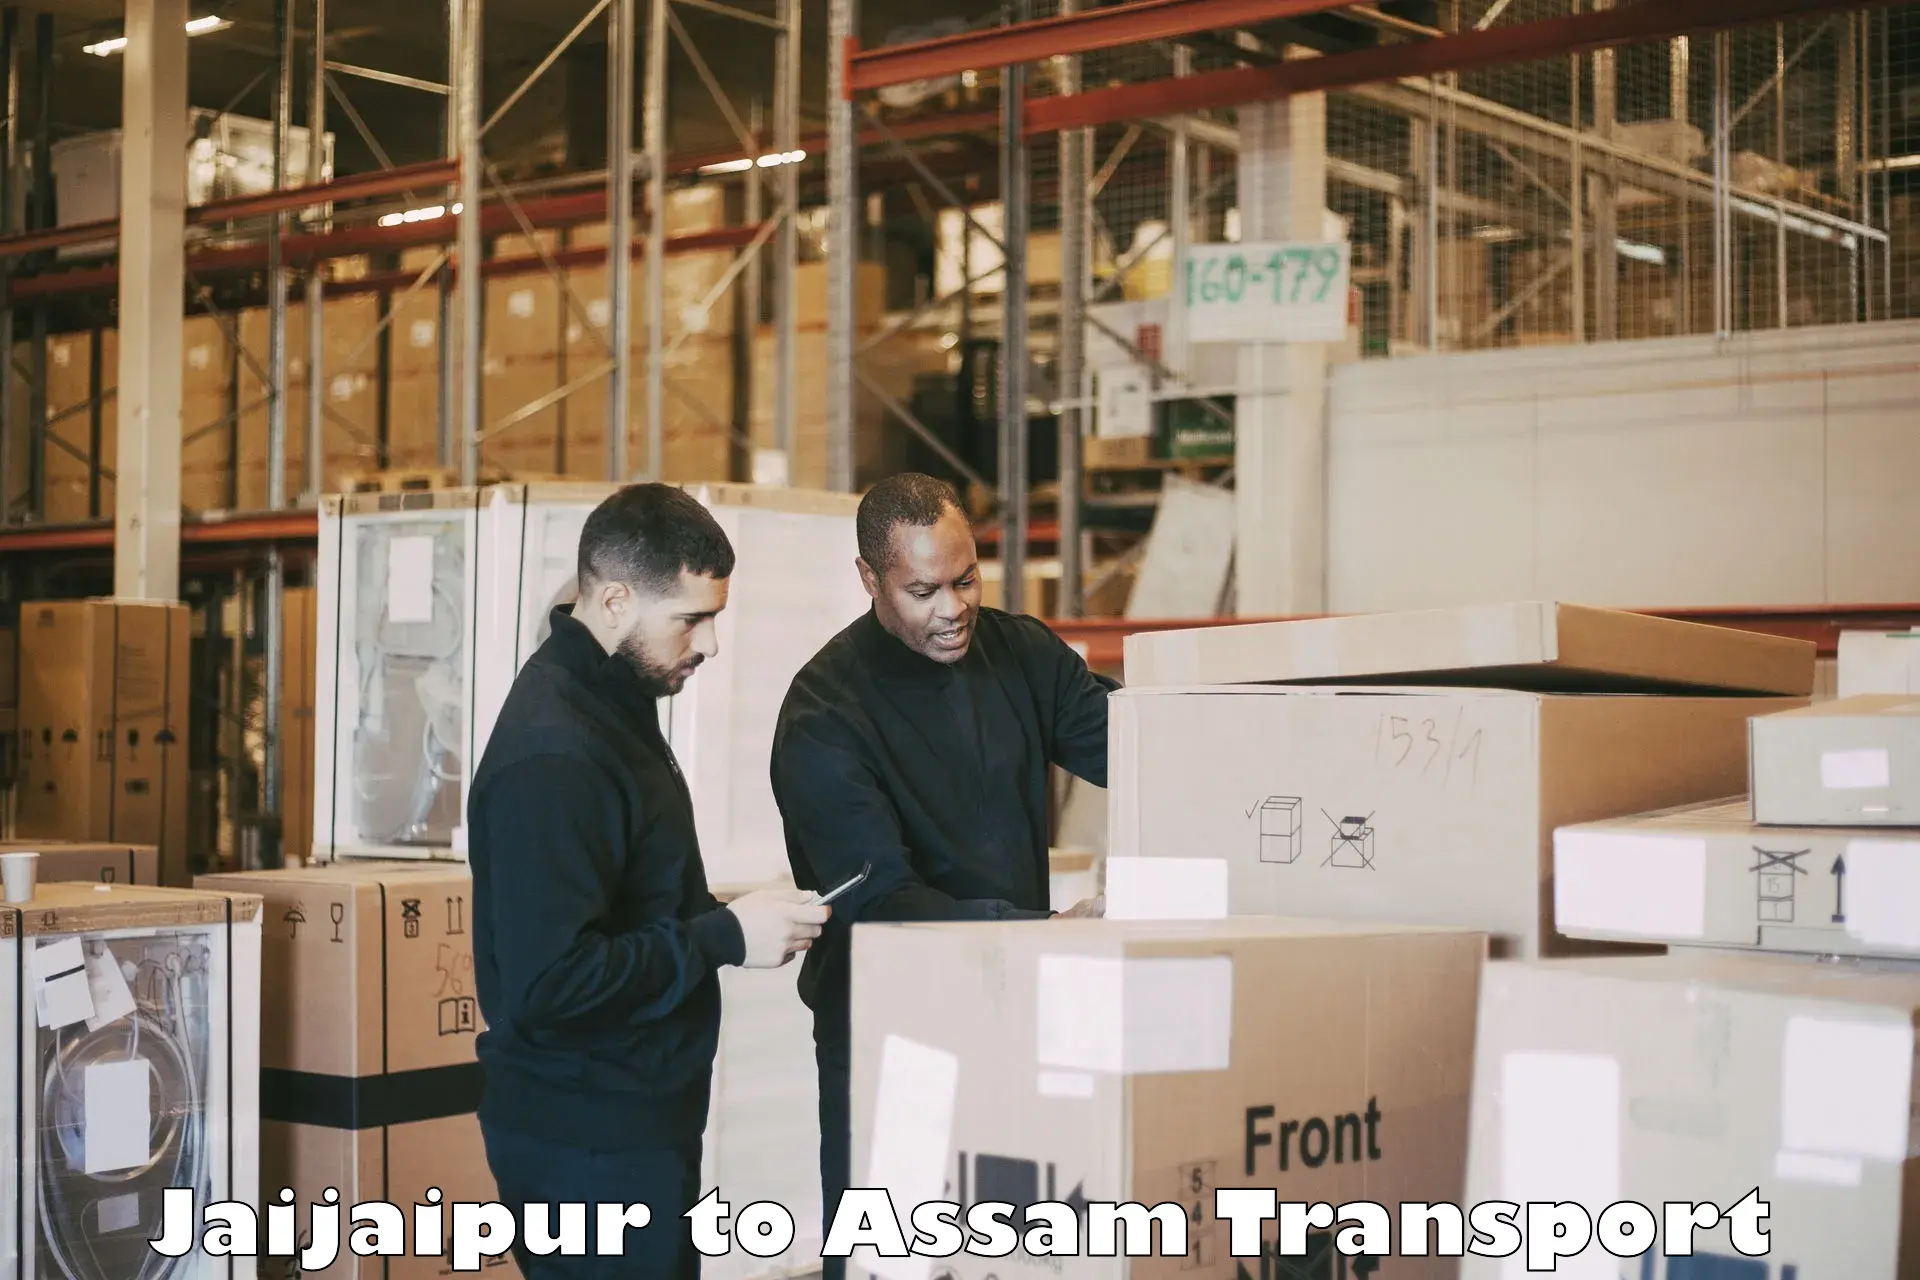 Furniture transport service Jaijaipur to Mirza Kamrup